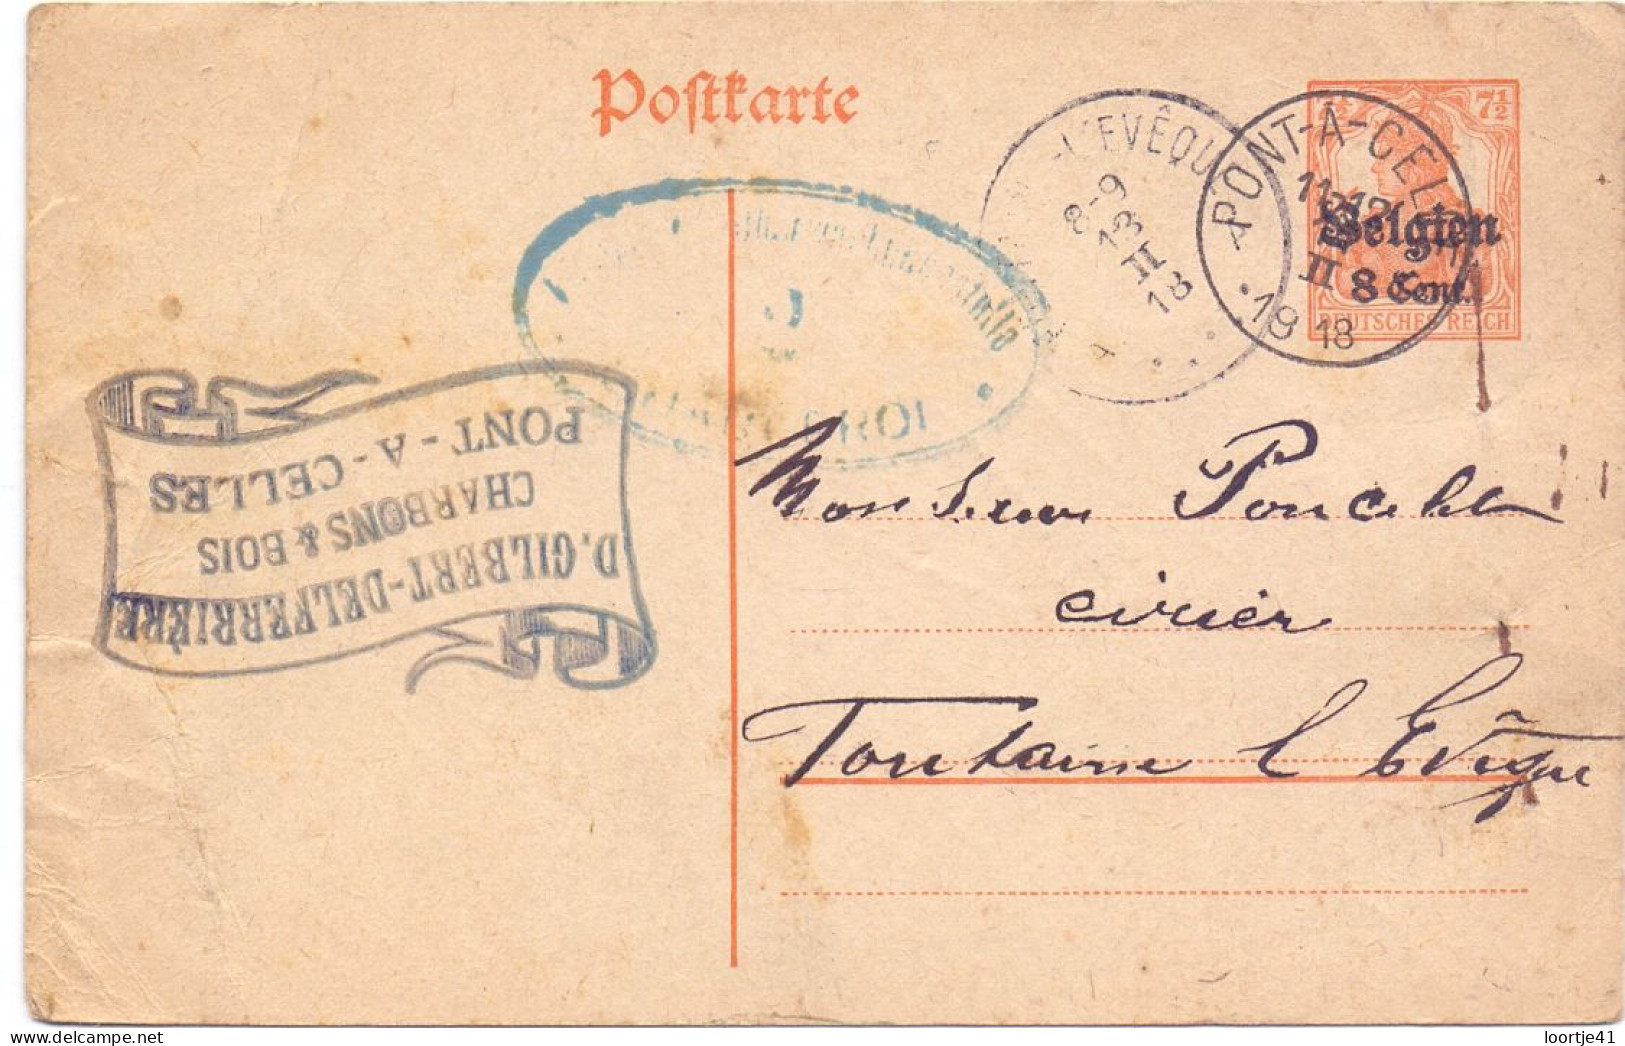 Briefkaart Carte Postale Postkarte Duitse Bezetting - Charbons Pont A Celles à Fontaine L'Eveque - 1918 - Occupation Allemande